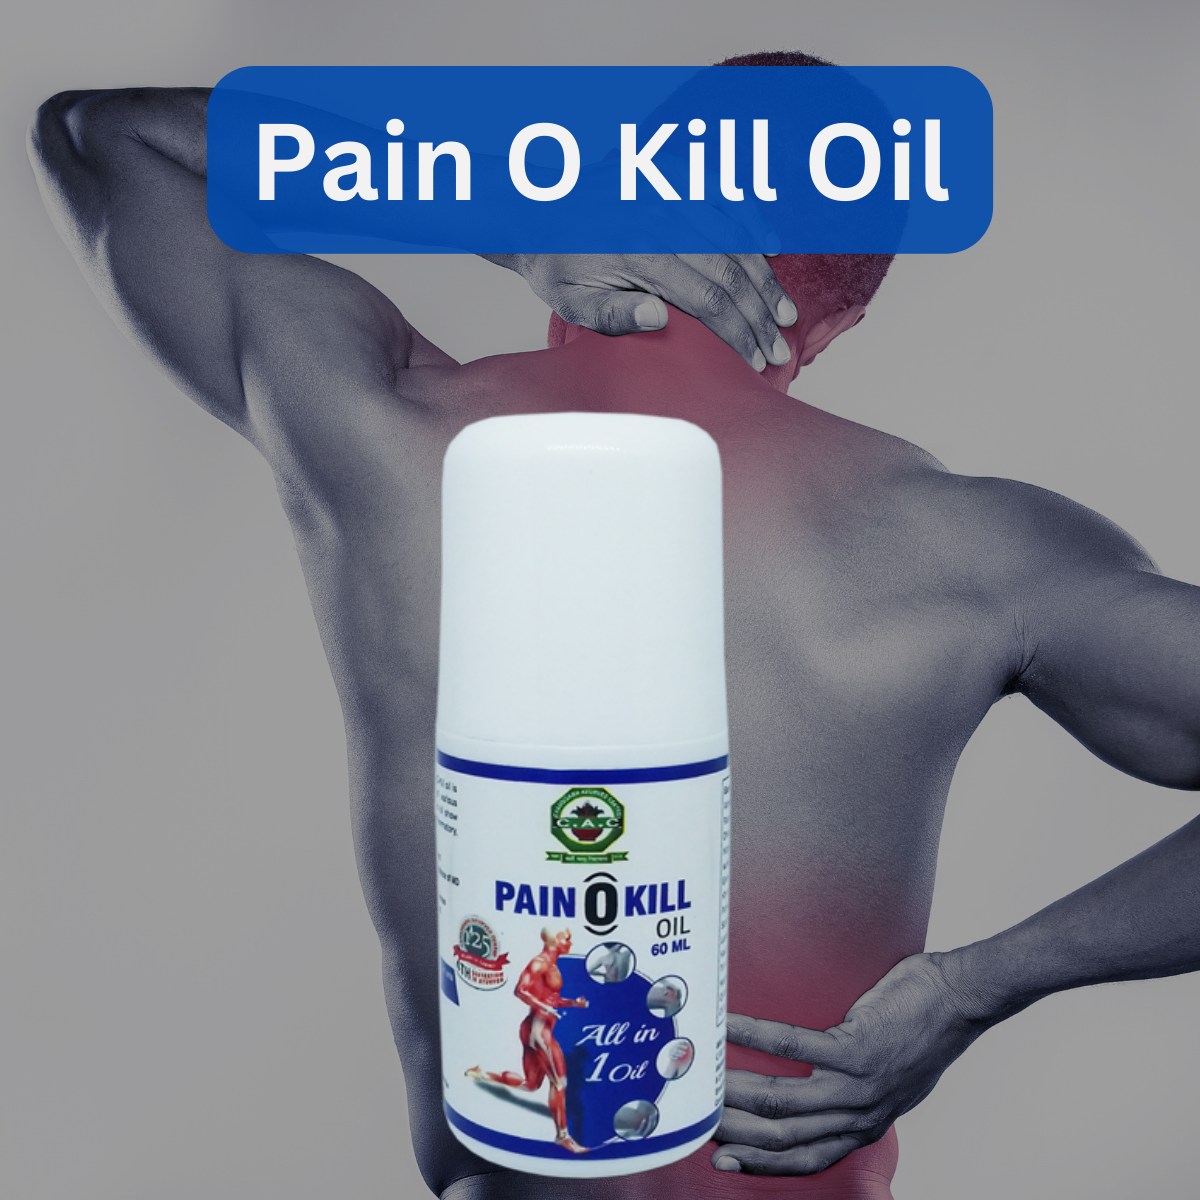 Pain O Kill Oil